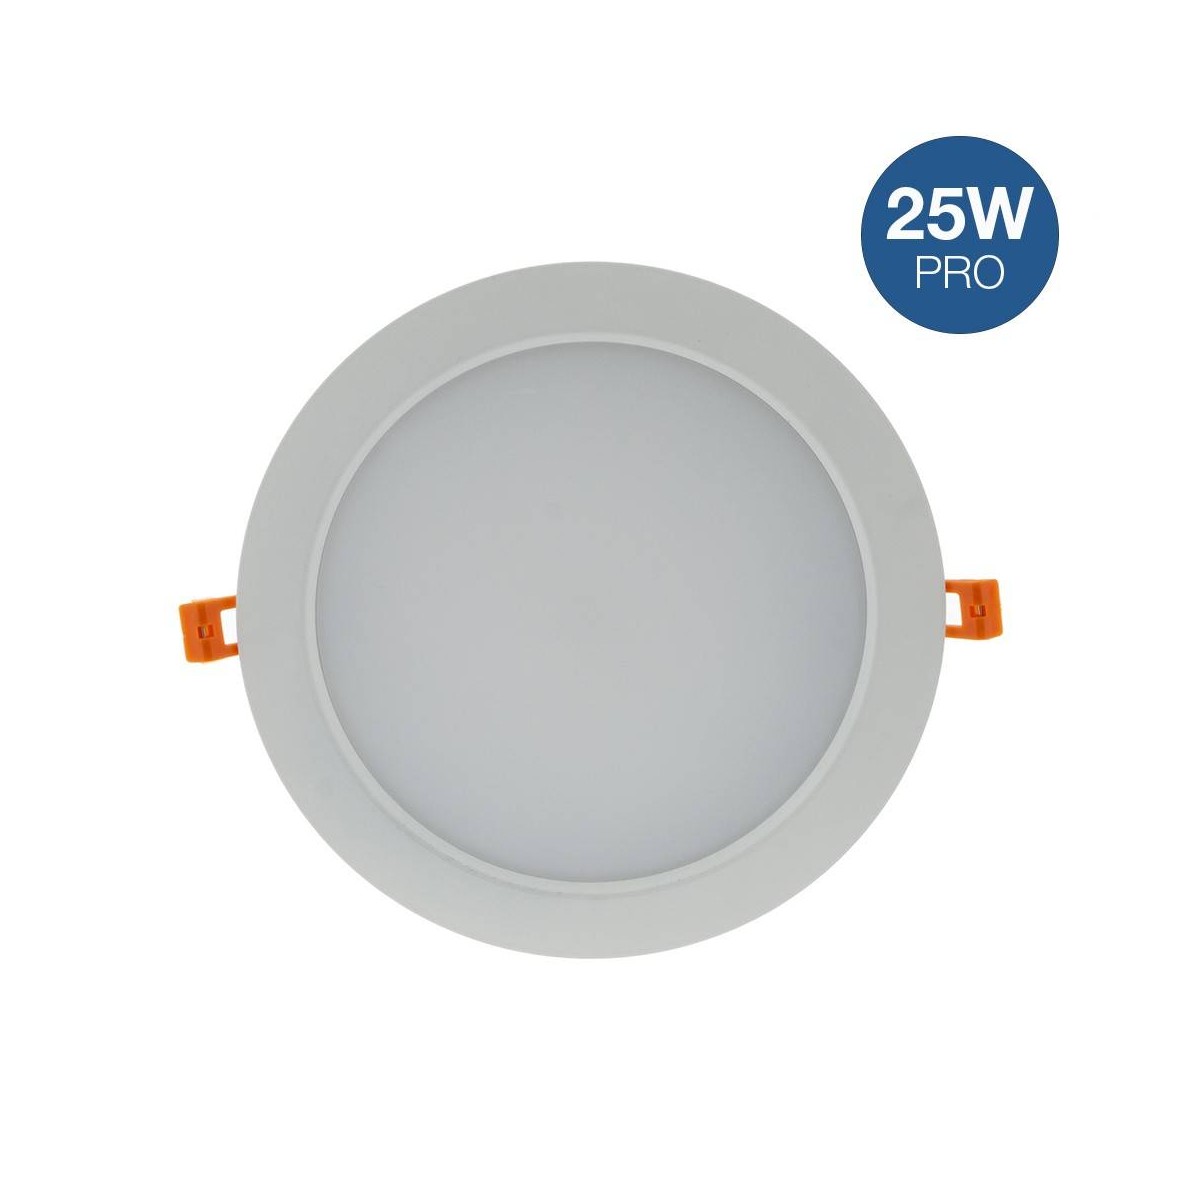 Downlight professionale a LED 25W da incasso circolare Ø 190 mm